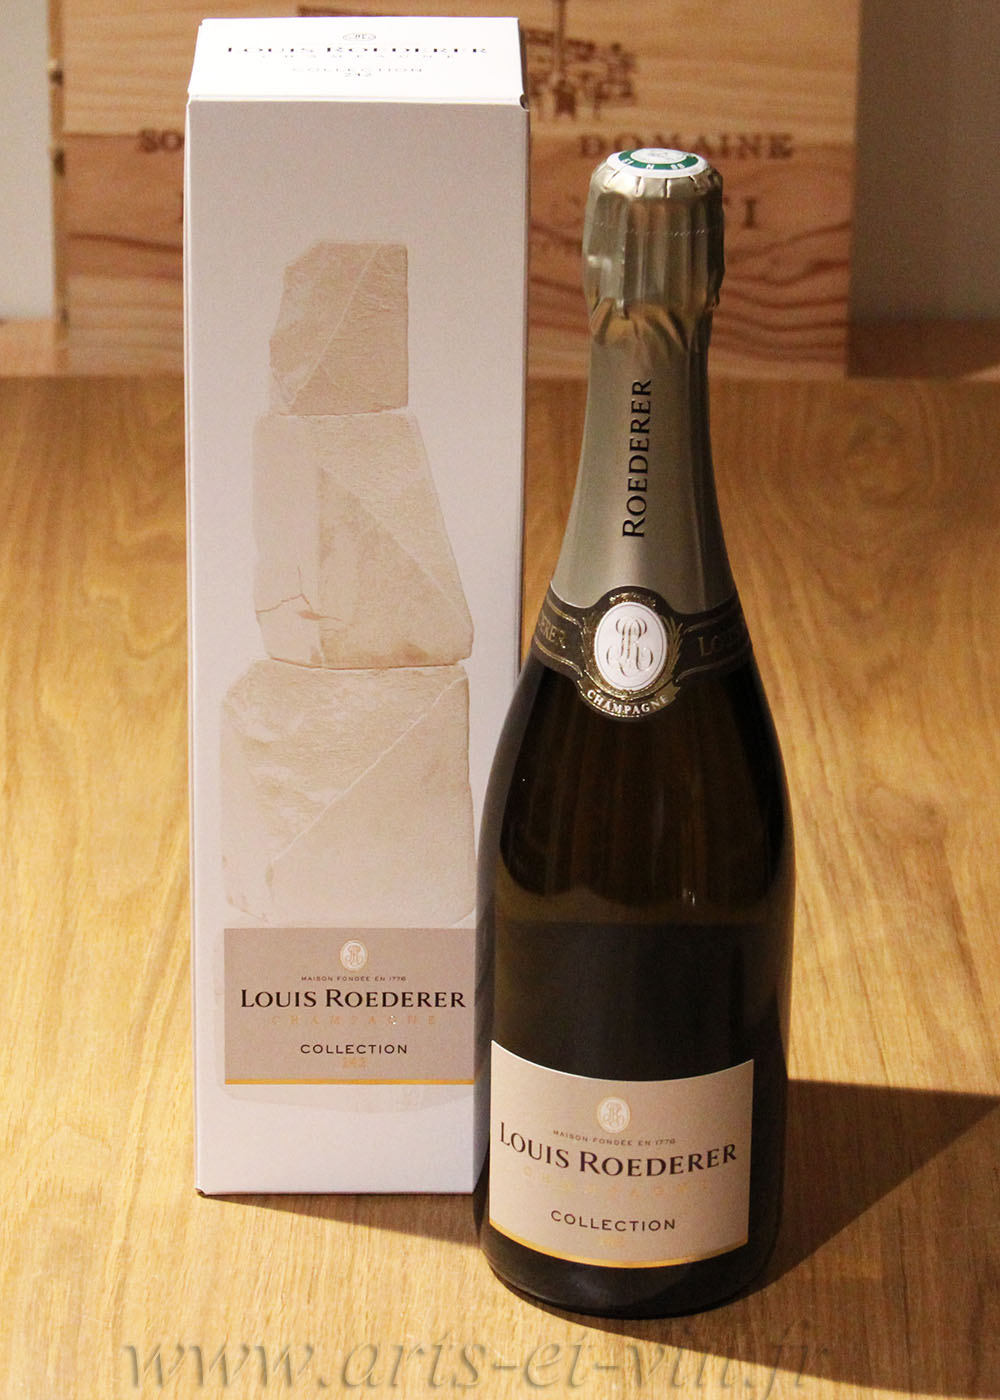 Champagne Louis Roederer en coffret - Cristal 2014 - 75cl - Le